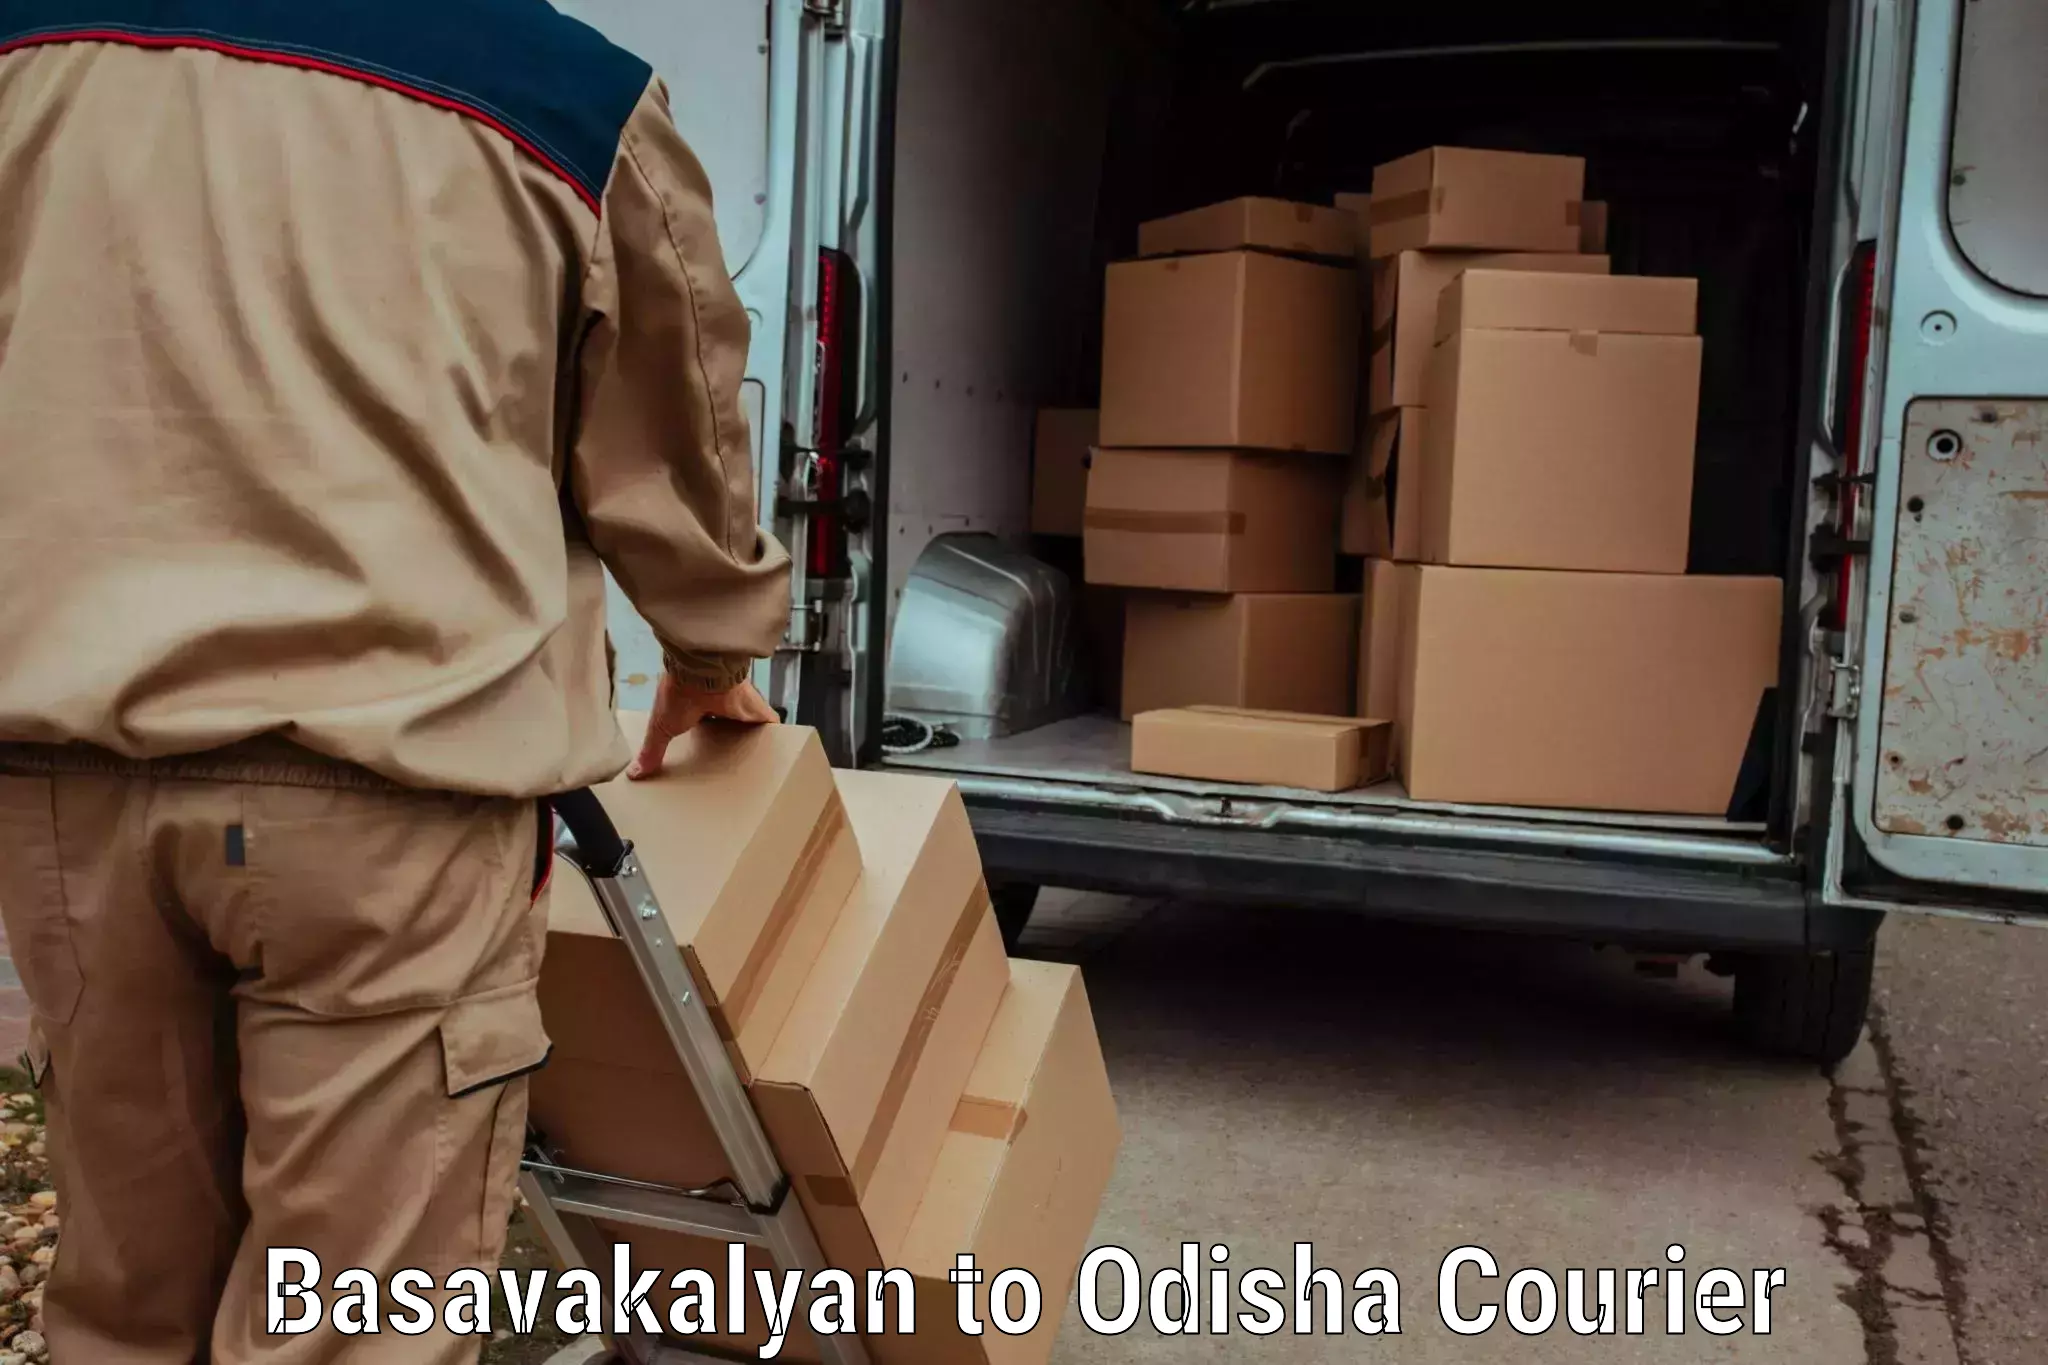 Next day courier in Basavakalyan to Malkangiri